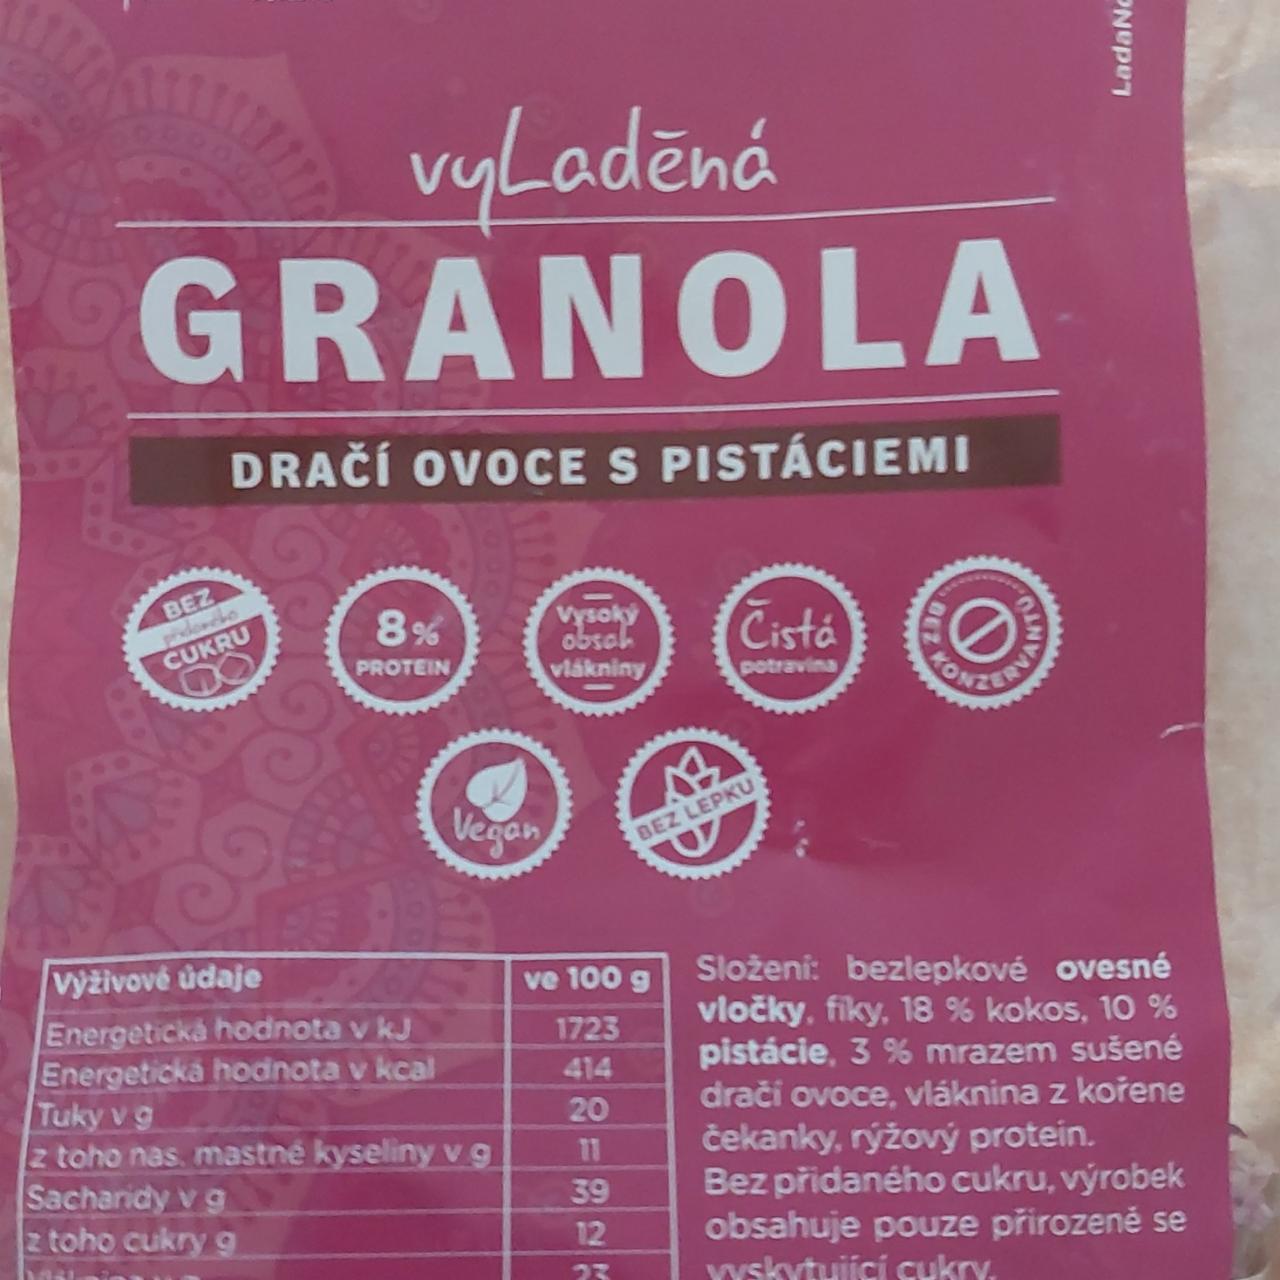 Fotografie - Vyladěná granola dračí ovoce s pistáciemi Diet Plan